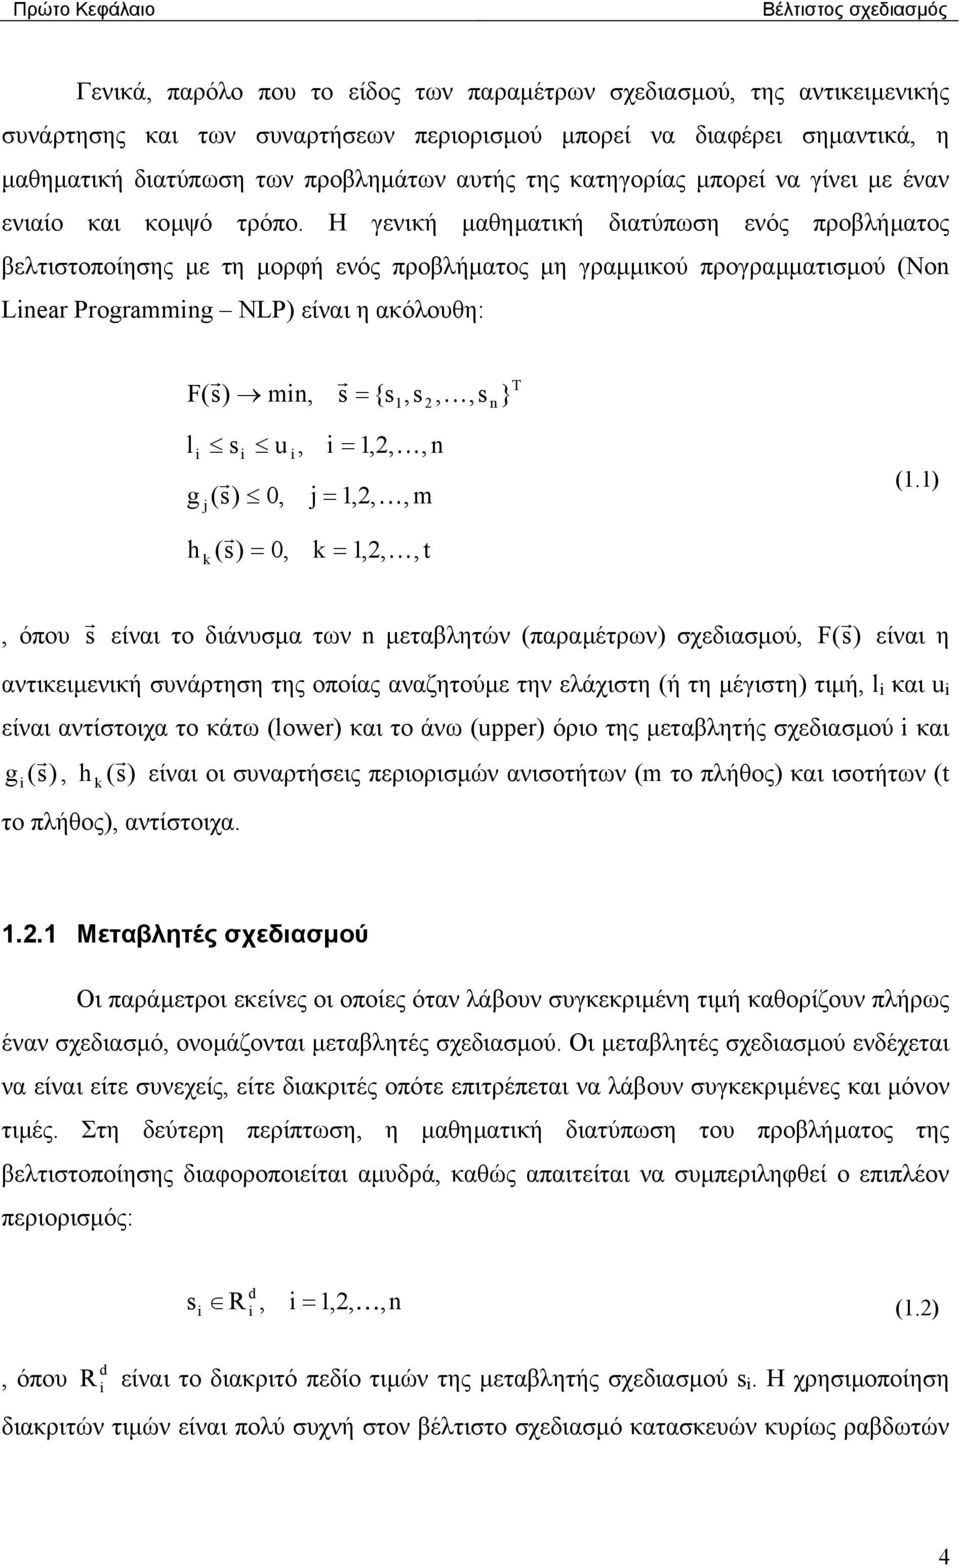 Η γενική µαθηµατική διατύπωση ενός προβλήµατος βελτιστοποίησης µε τη µορφή ενός προβλήµατος µη γραµµικού προγραµµατισµού (No Lear Programmg NLP) είναι η ακόλουθη: r F(s) m, r s = {s,s, K,s } T l s u,